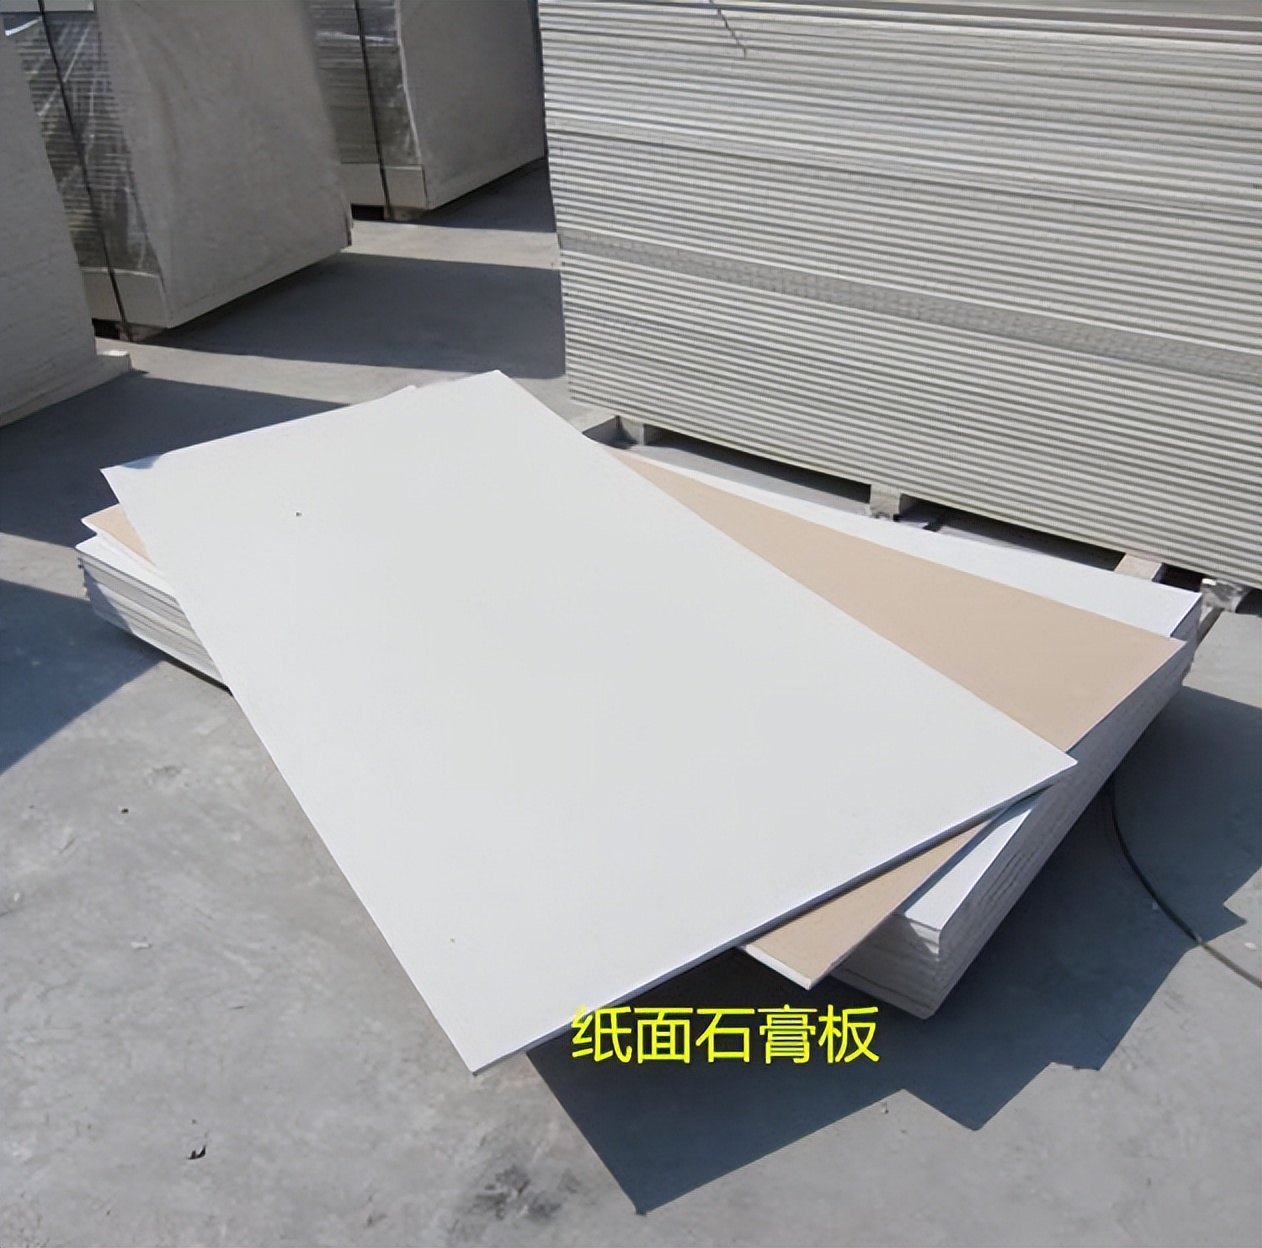 纸面石膏板怎么样 用作于吊顶更大气?